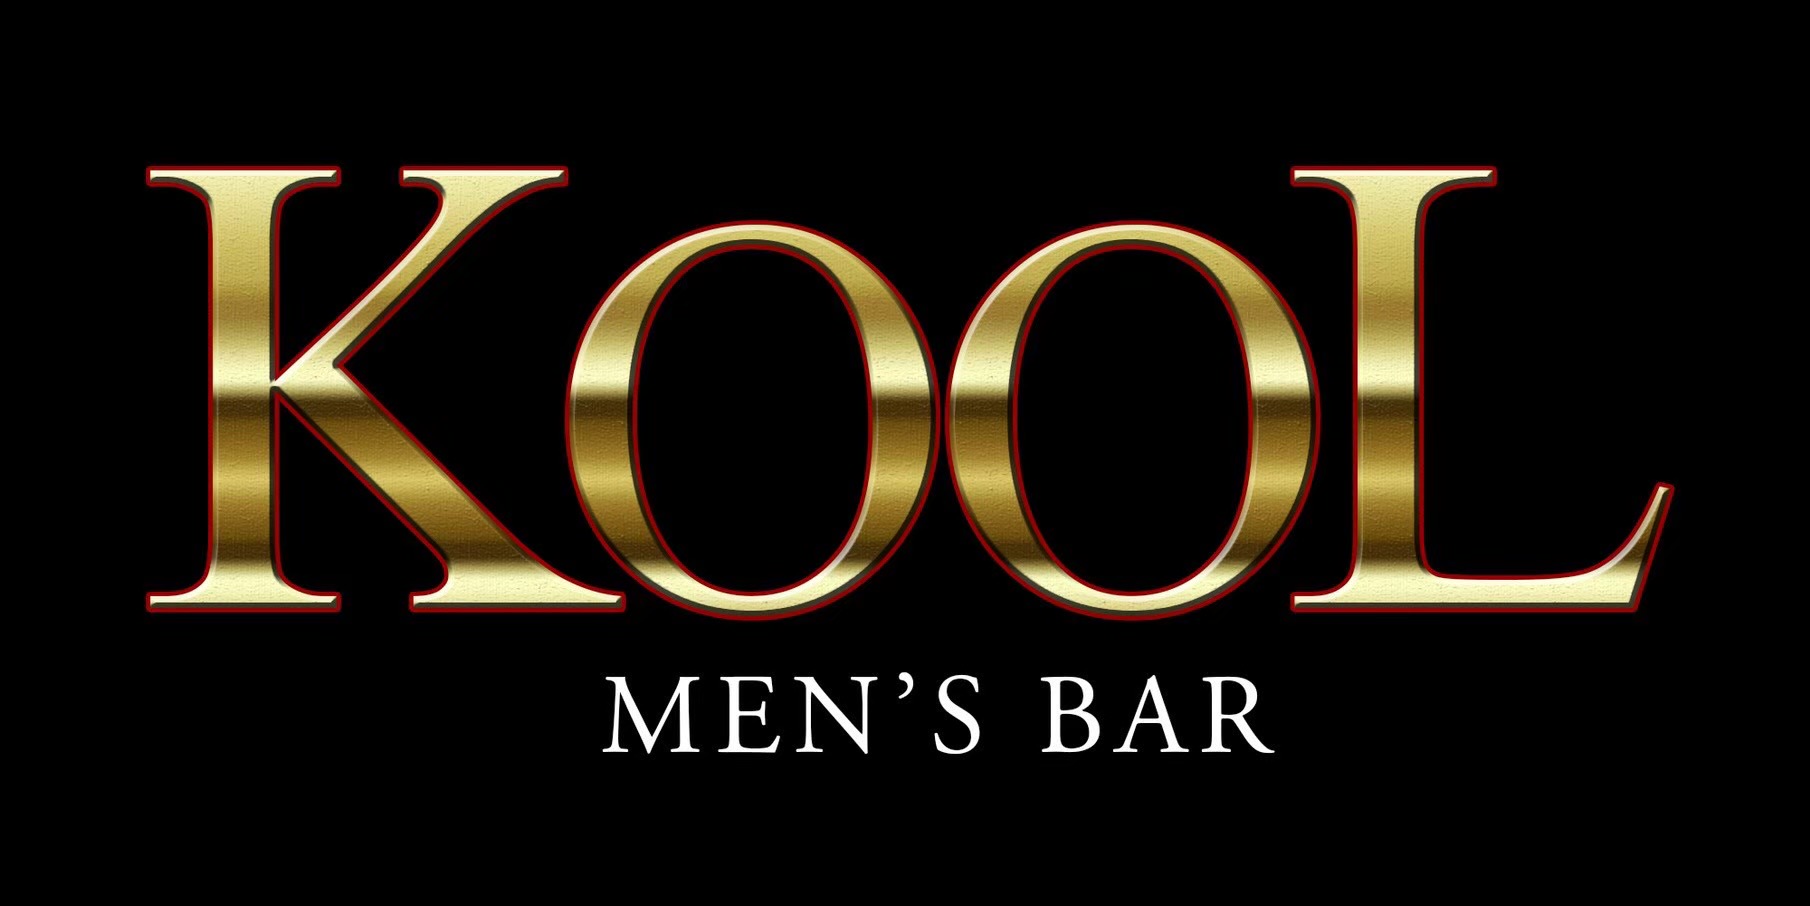 ケイスケ  (メタルスライム)Men's Bar KOOL